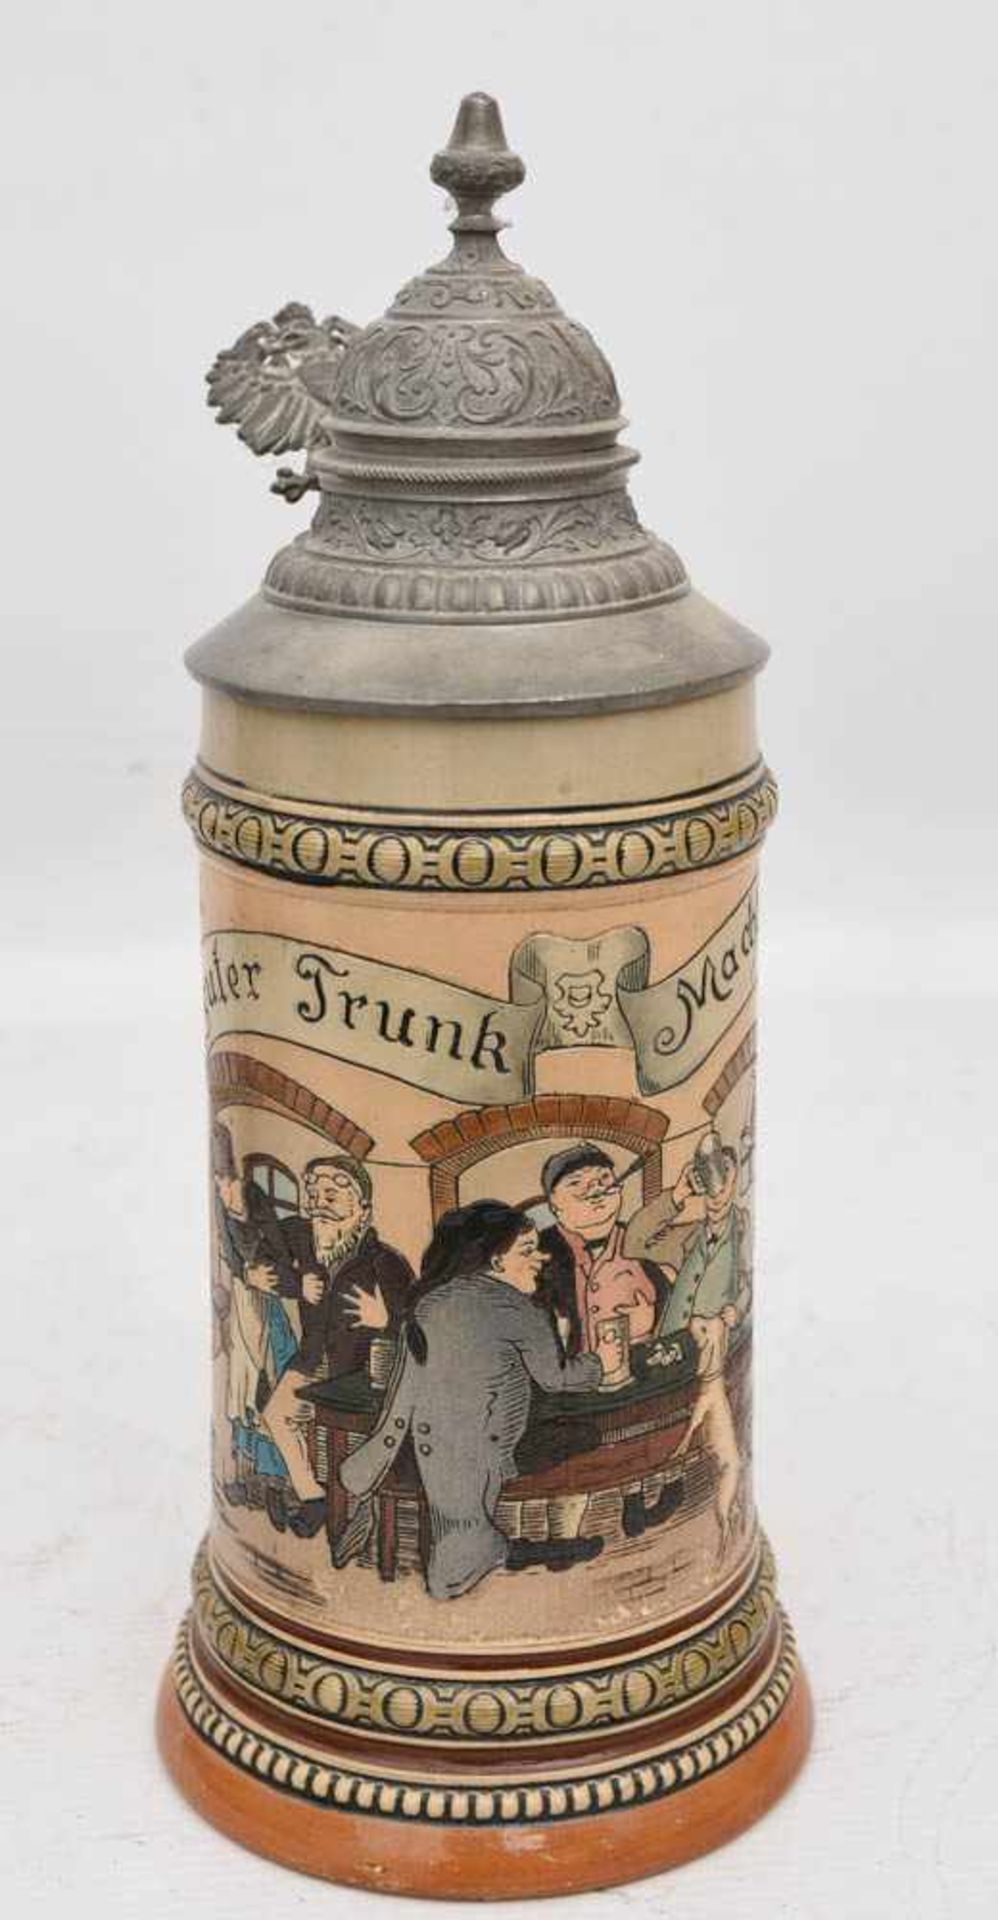 BIERKRUG "EIN GUTER TRUNK", bemalte glasierte Keramik/Zinn gemarkt, um 1900Zinndeckelkrug mit - Bild 2 aus 4